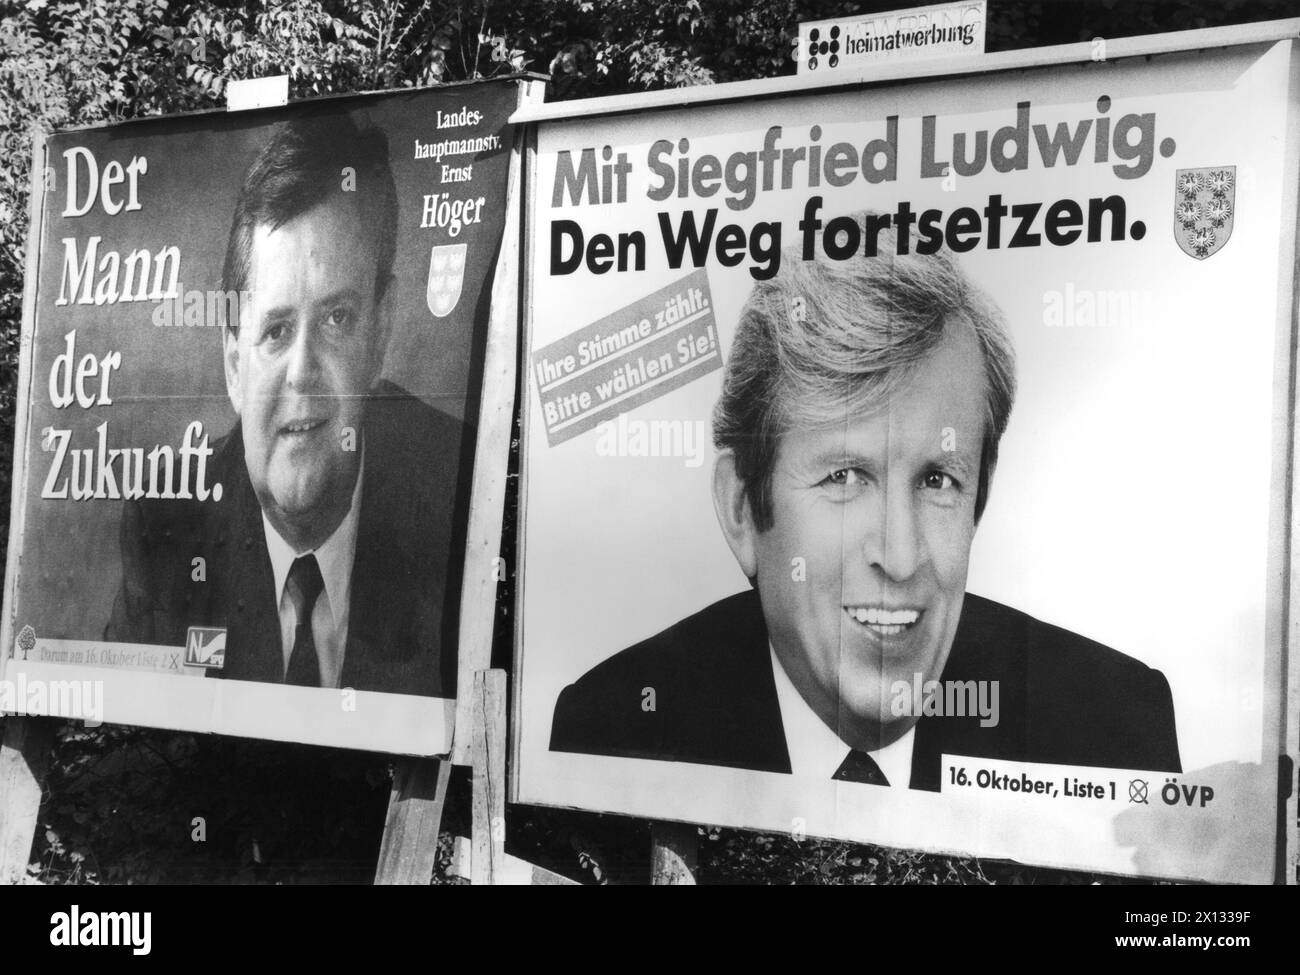 Klosterneuburg il 14 ottobre 1988: Manifesti elettorali con i migliori candidati dei grandi partiti della bassa Austria, Ernst Hoeger (SPOE) e Siegfried Ludwig (OEVP). - 19881014 PD0005 - Rechteinfo: Diritti gestiti (RM) Foto Stock